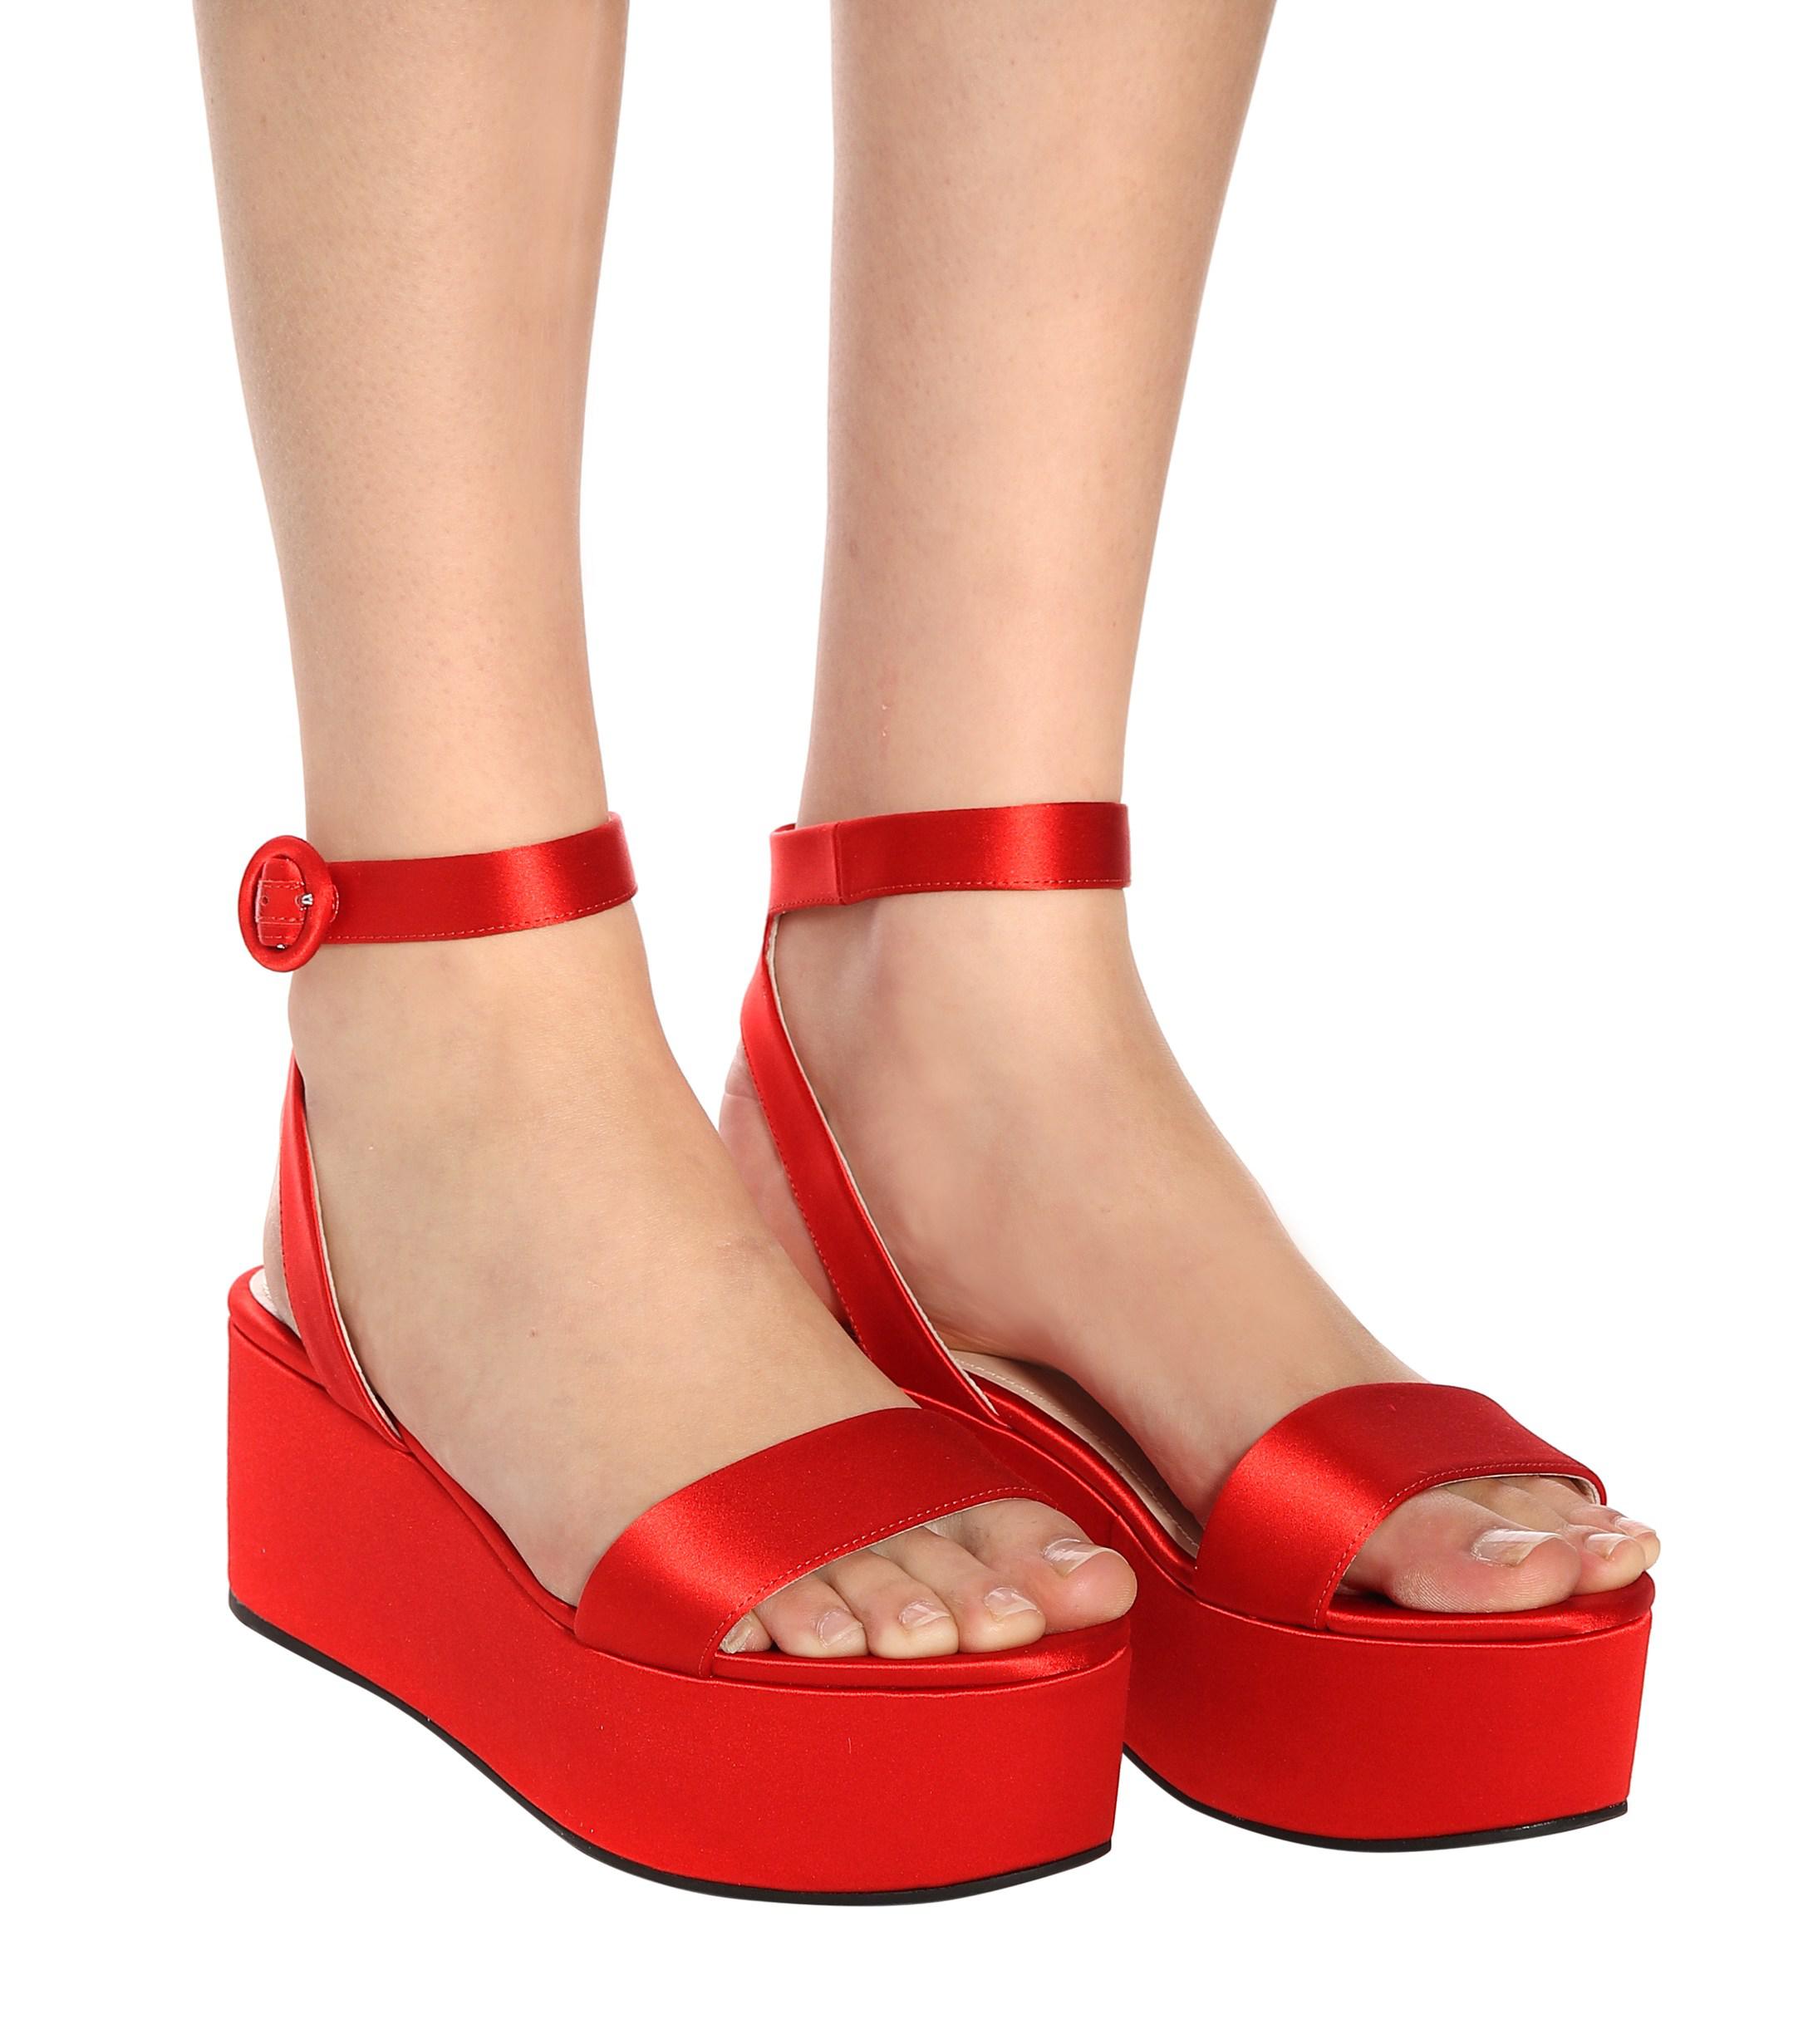 Prada Satin Platform Sandals in Red - Lyst